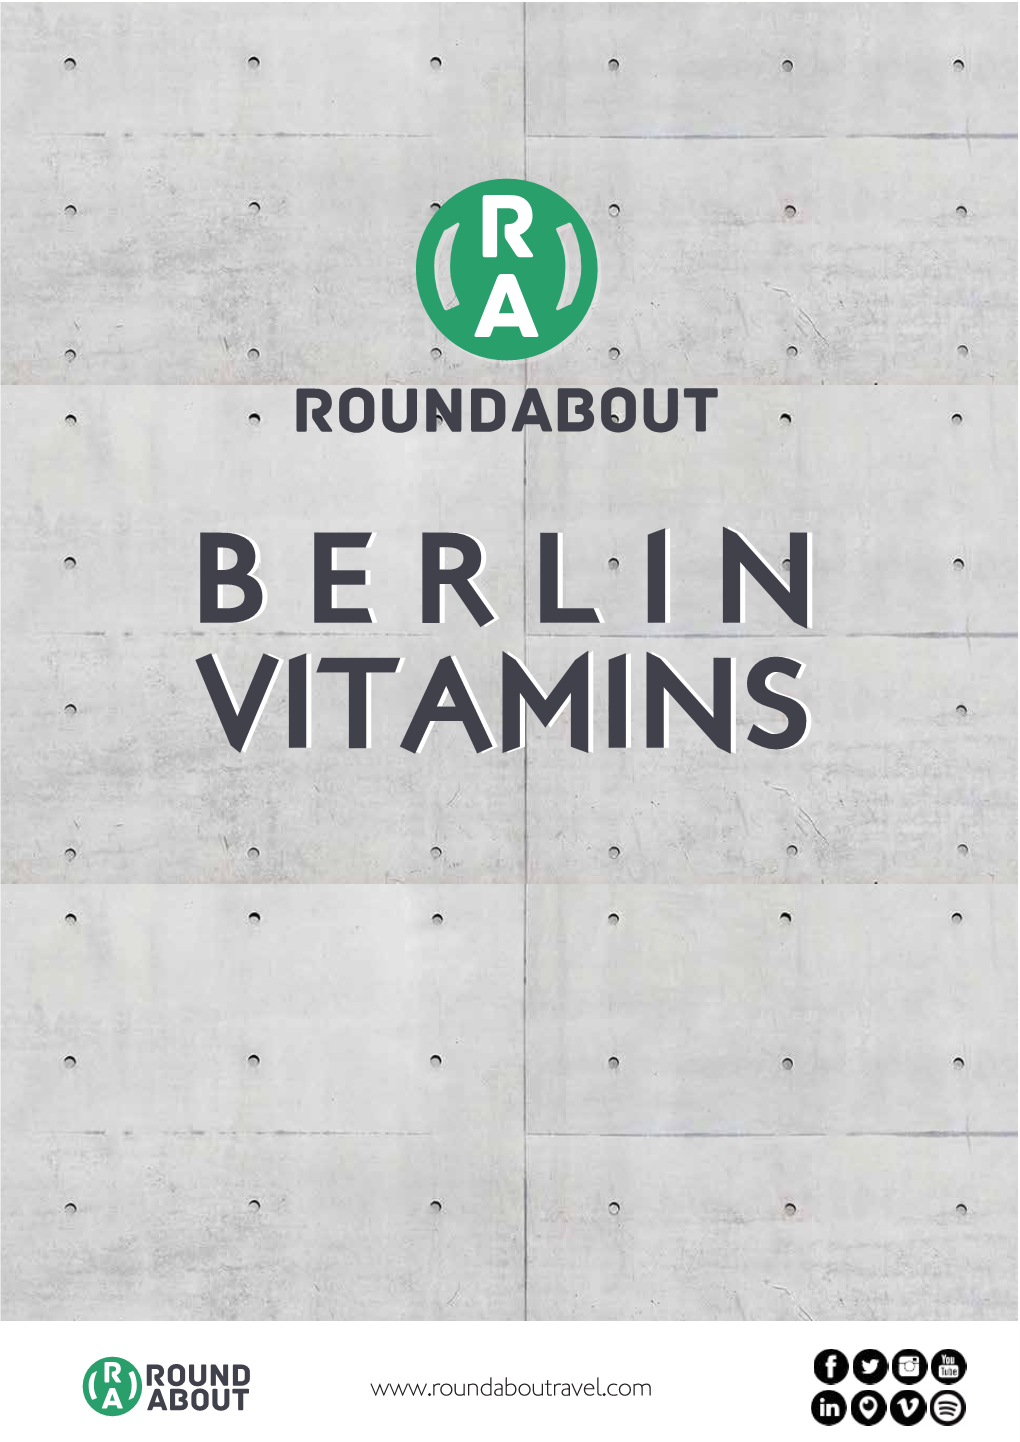 Round About BERLINBERLIN VITAMINSVITAMINS